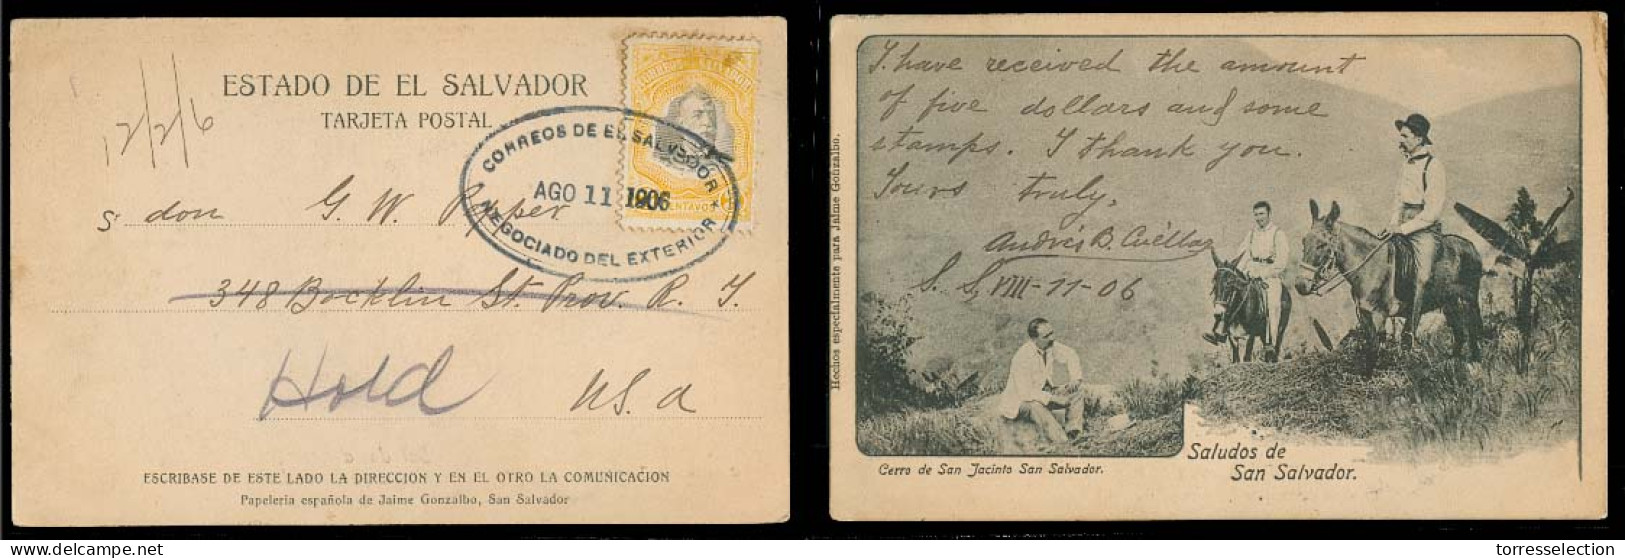 SALVADOR, EL. 1906 (11 Ago). Salvador - USA. Fkd PR 3c Yellow Stamp / Oval Cachet. Nice Cond. - Salvador